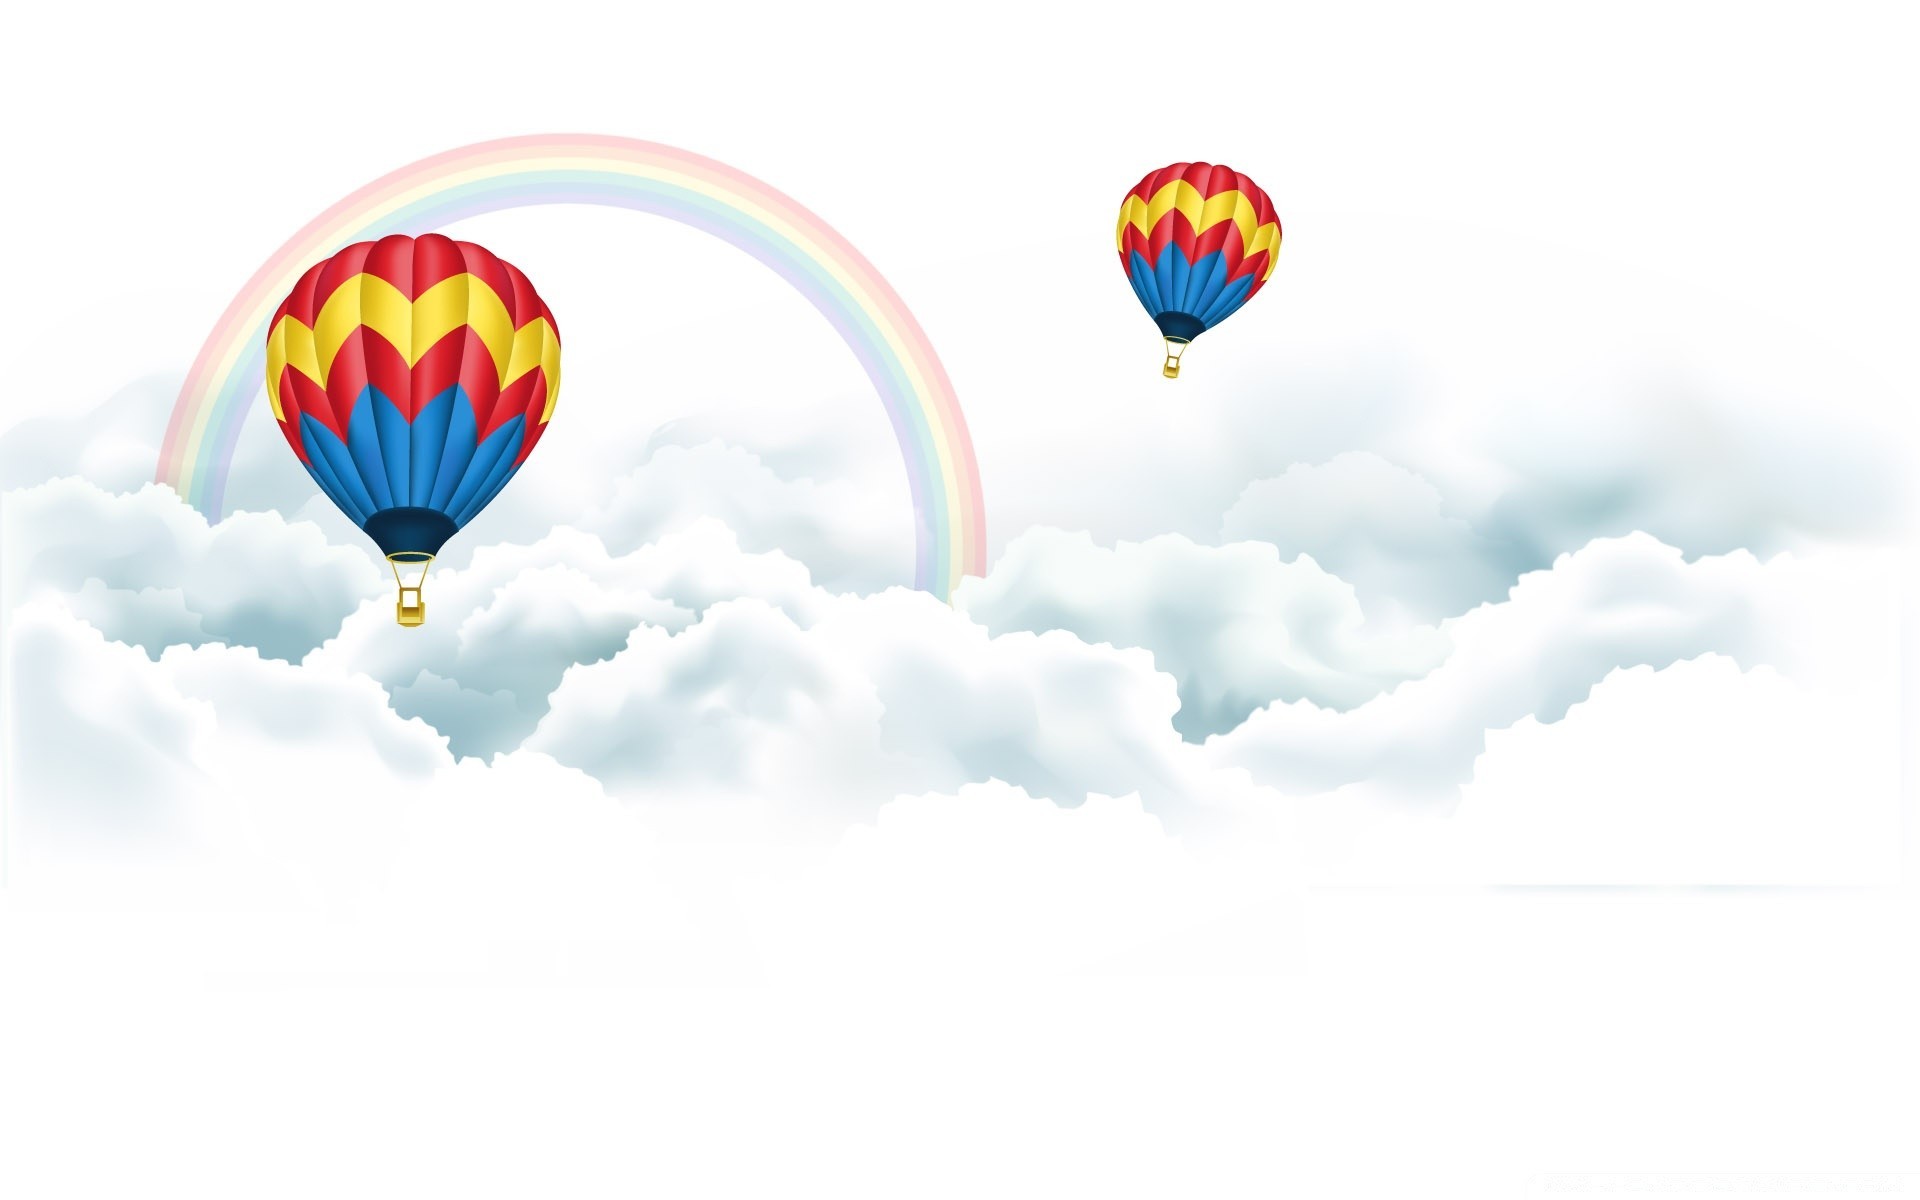 векторная графика воздушный шар свобода воздуха горячая-воздушный шар рейс небо парашют летать самолет приключения плавание высокая ветер дирижабль удовольствие парить гелий путешествия на открытом воздухе